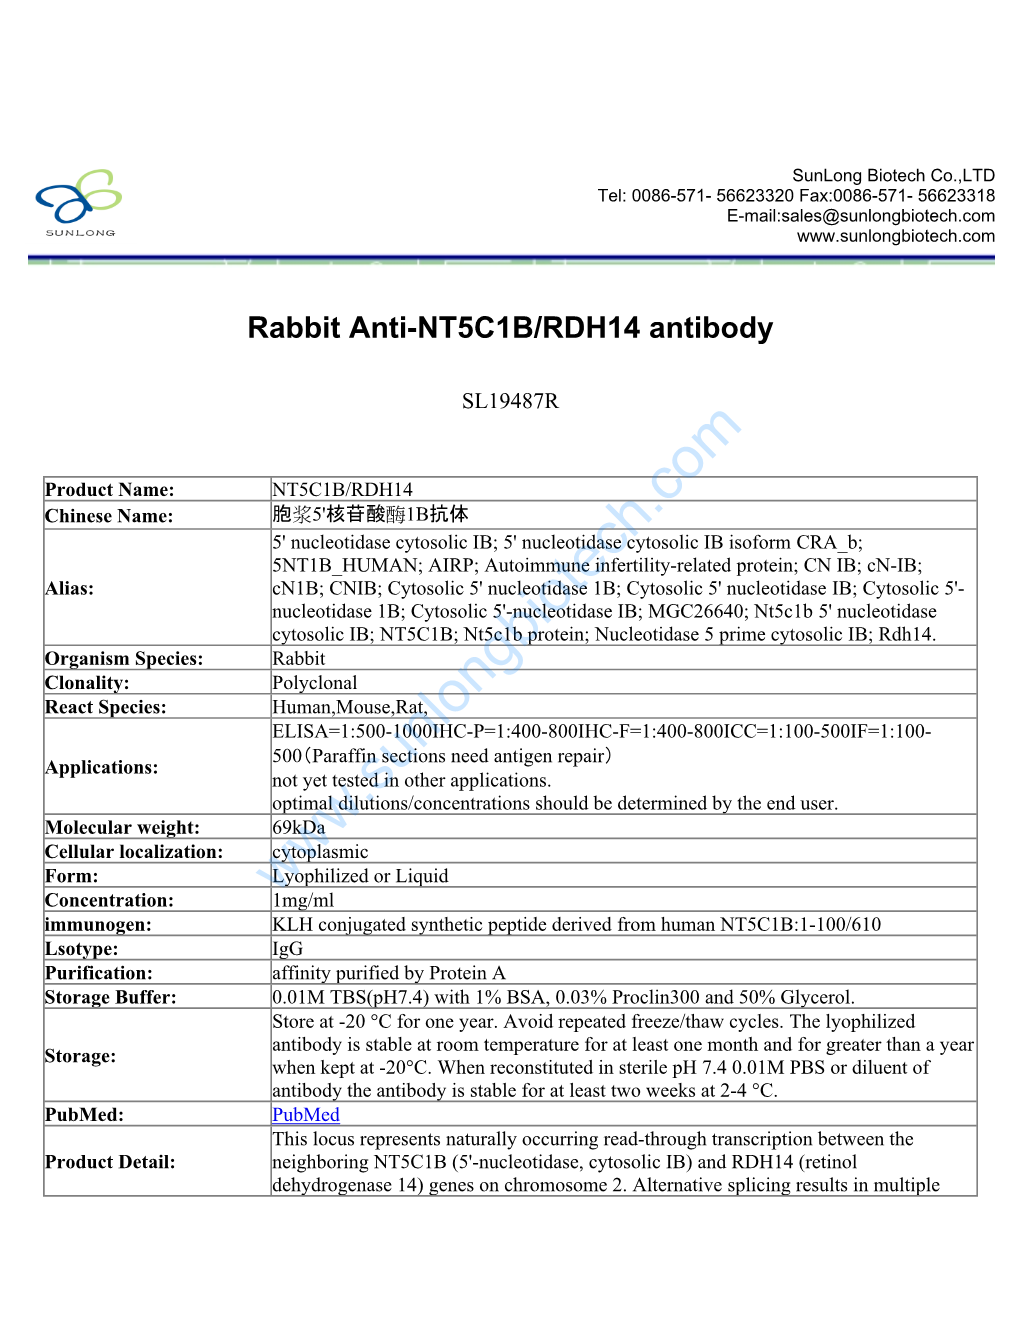 Rabbit Anti-NT5C1B/RDH14 Antibody-SL19487R